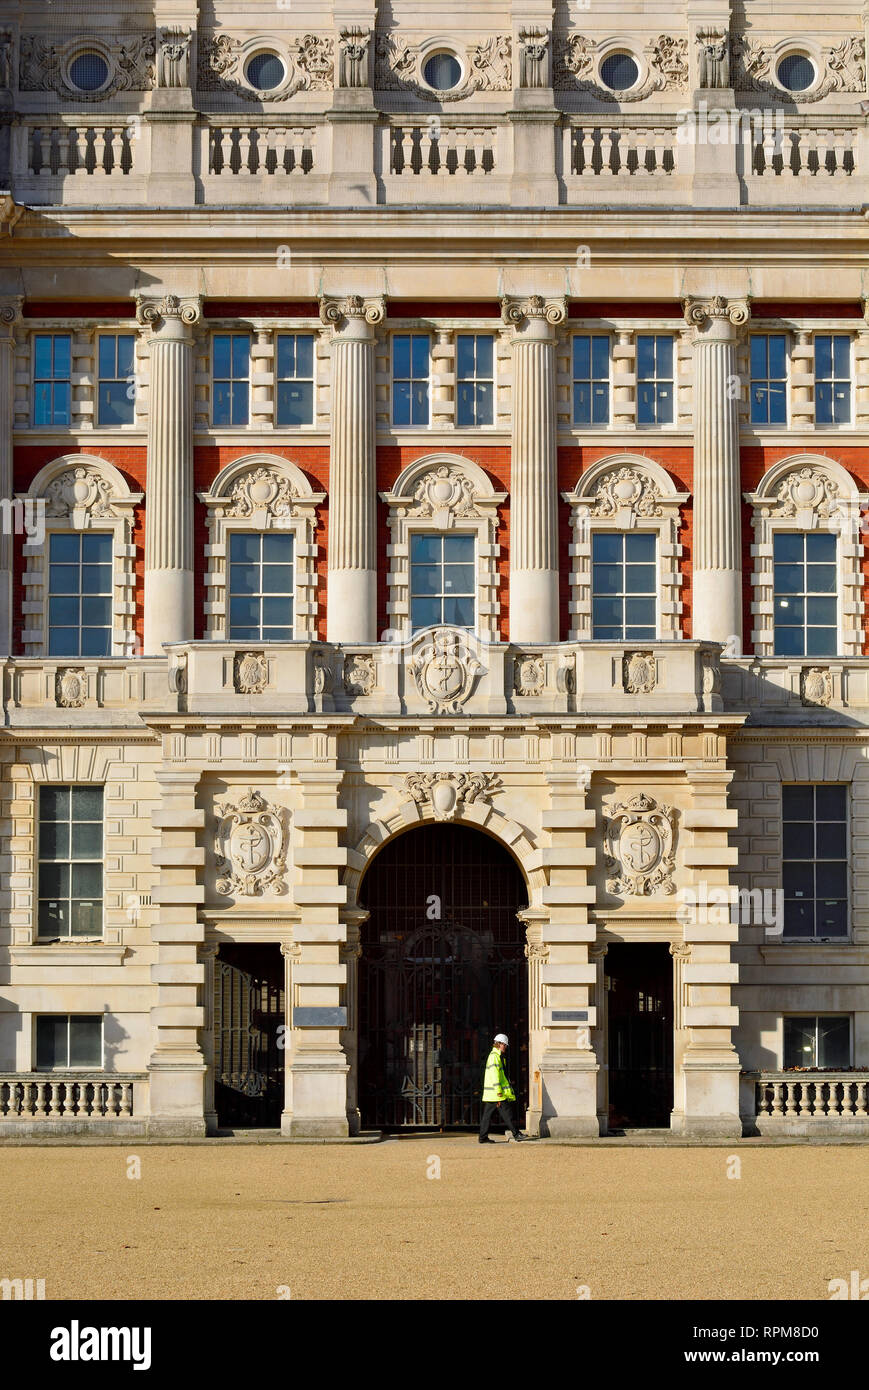 London, England, UK. Horse Guards Parade - Ministerium für Verteidigung, Old Admiralty Building - Arbeiter in High vis Weste vorbei gehen. Stockfoto